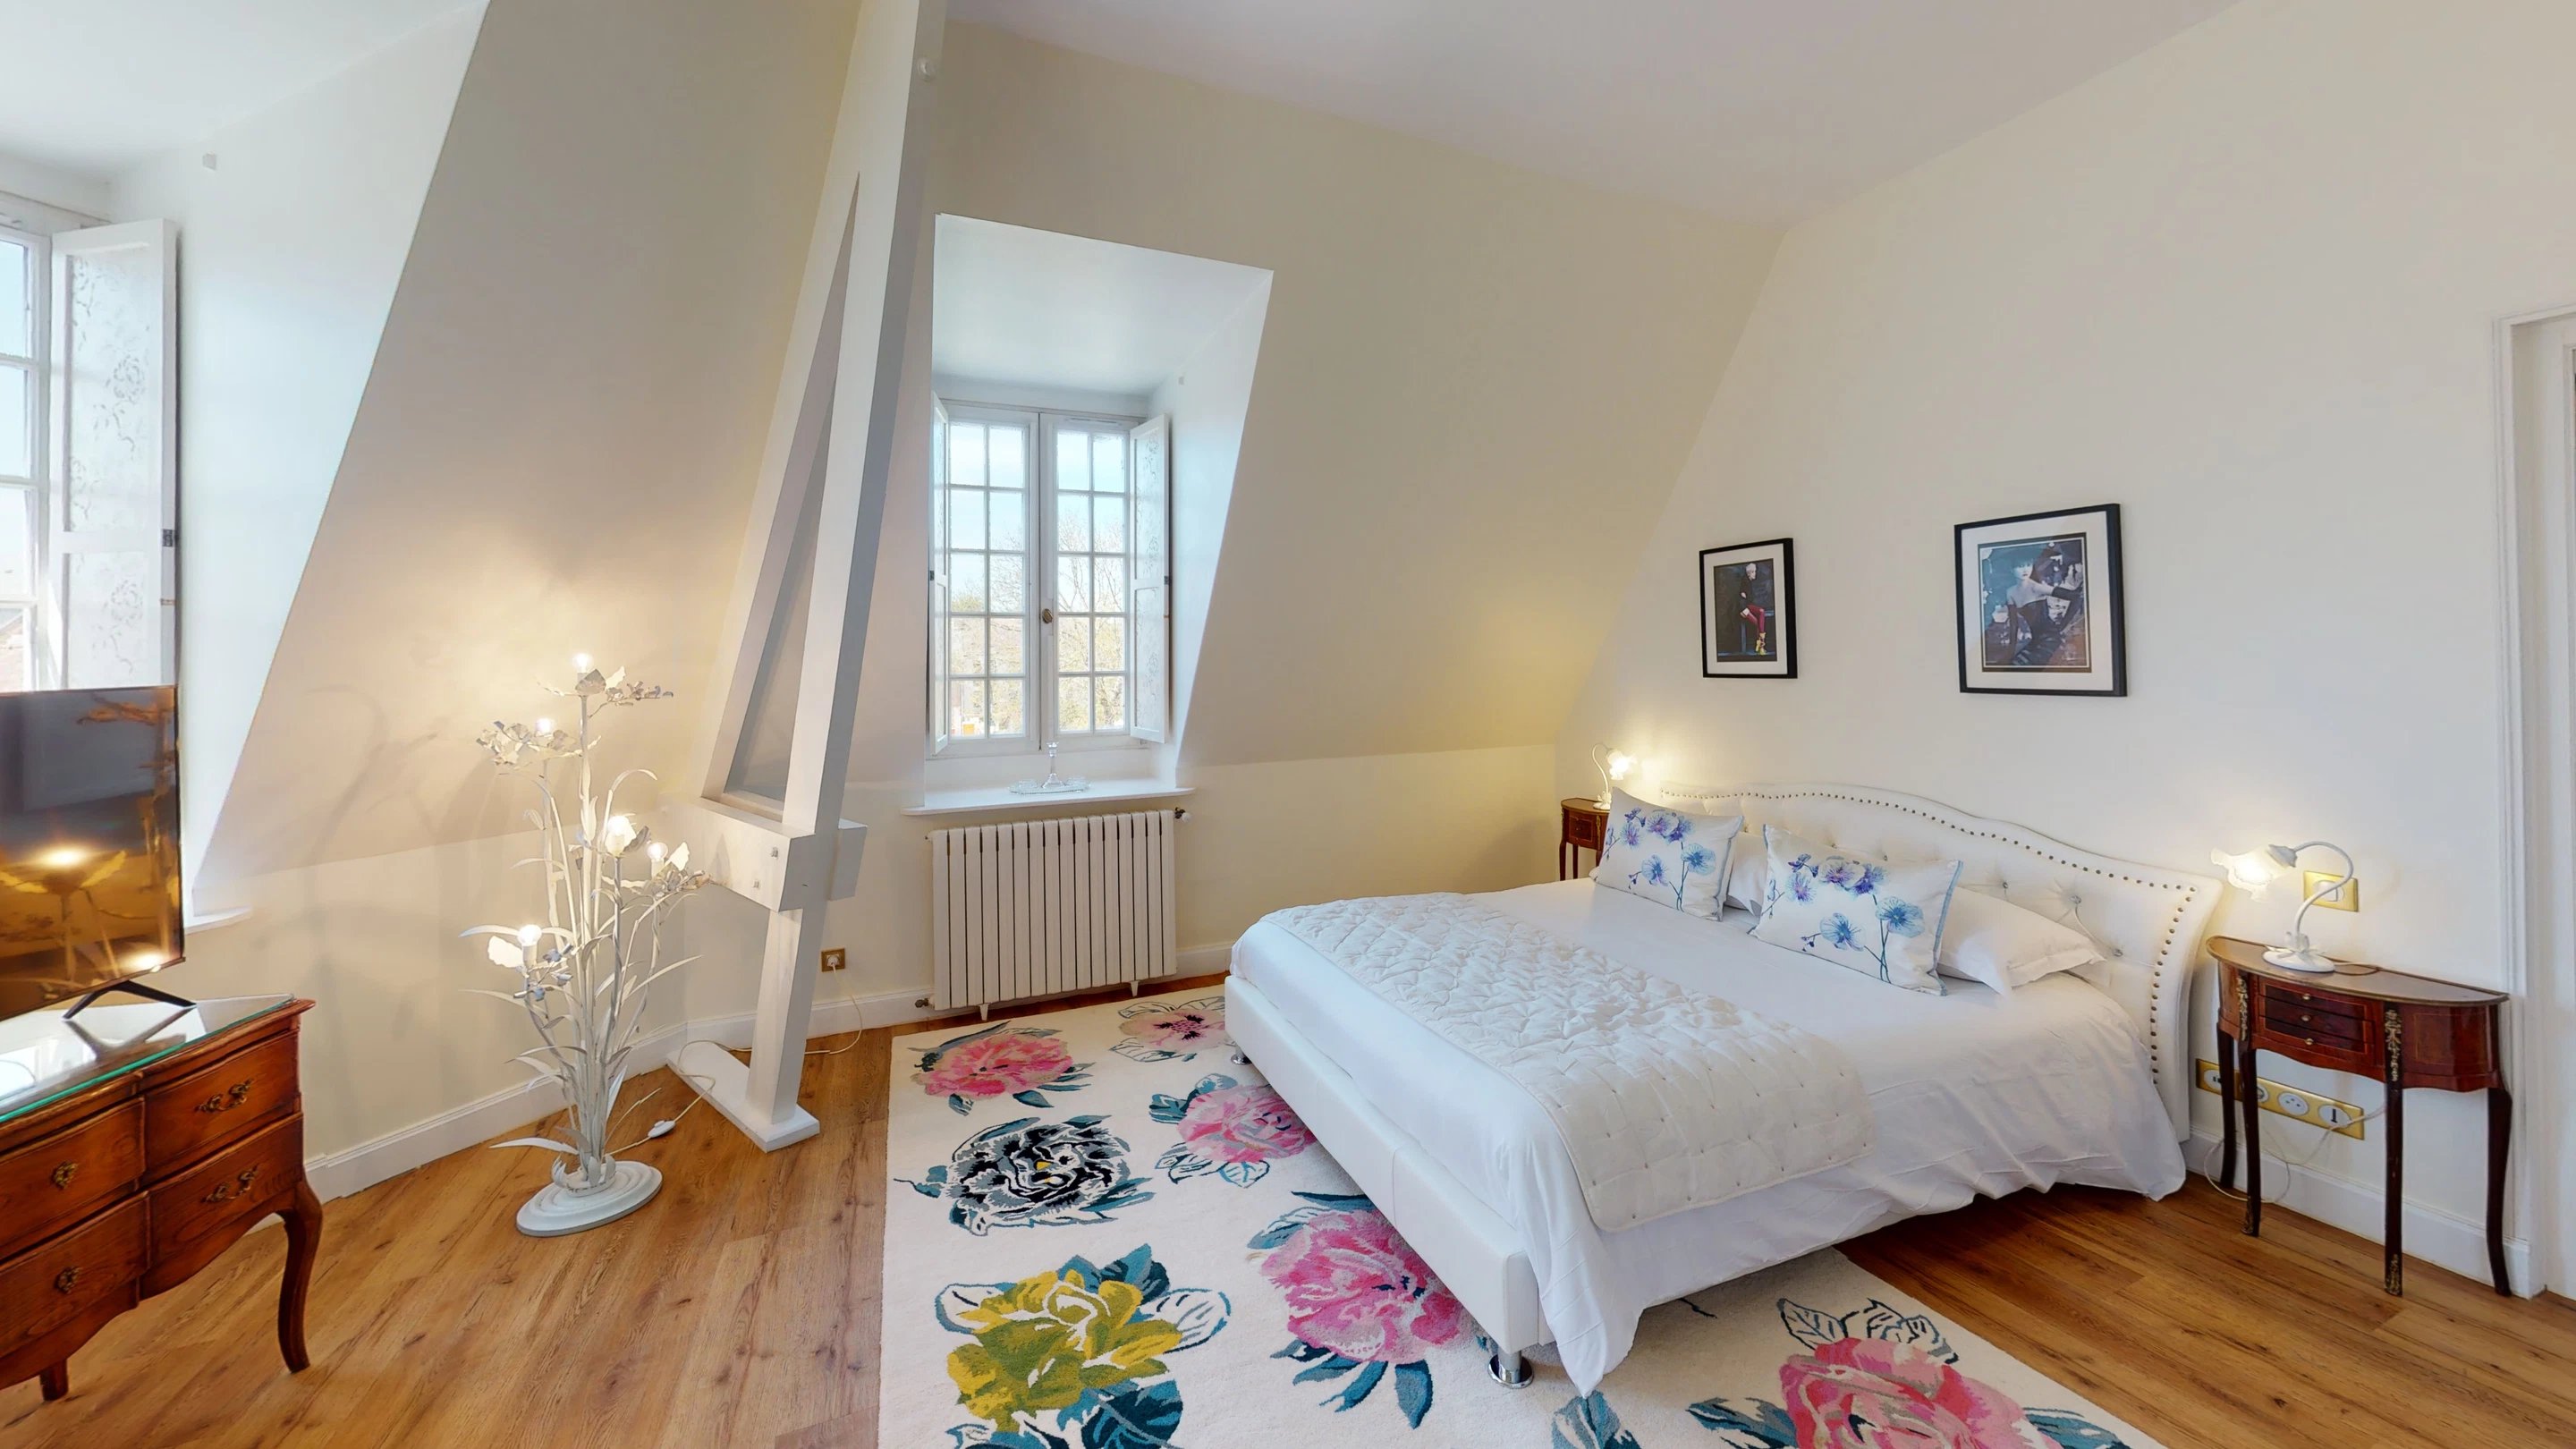 561/Photos/Chambres/Suite/Chateau-De-Montreuil-Bedroom-6.jpg